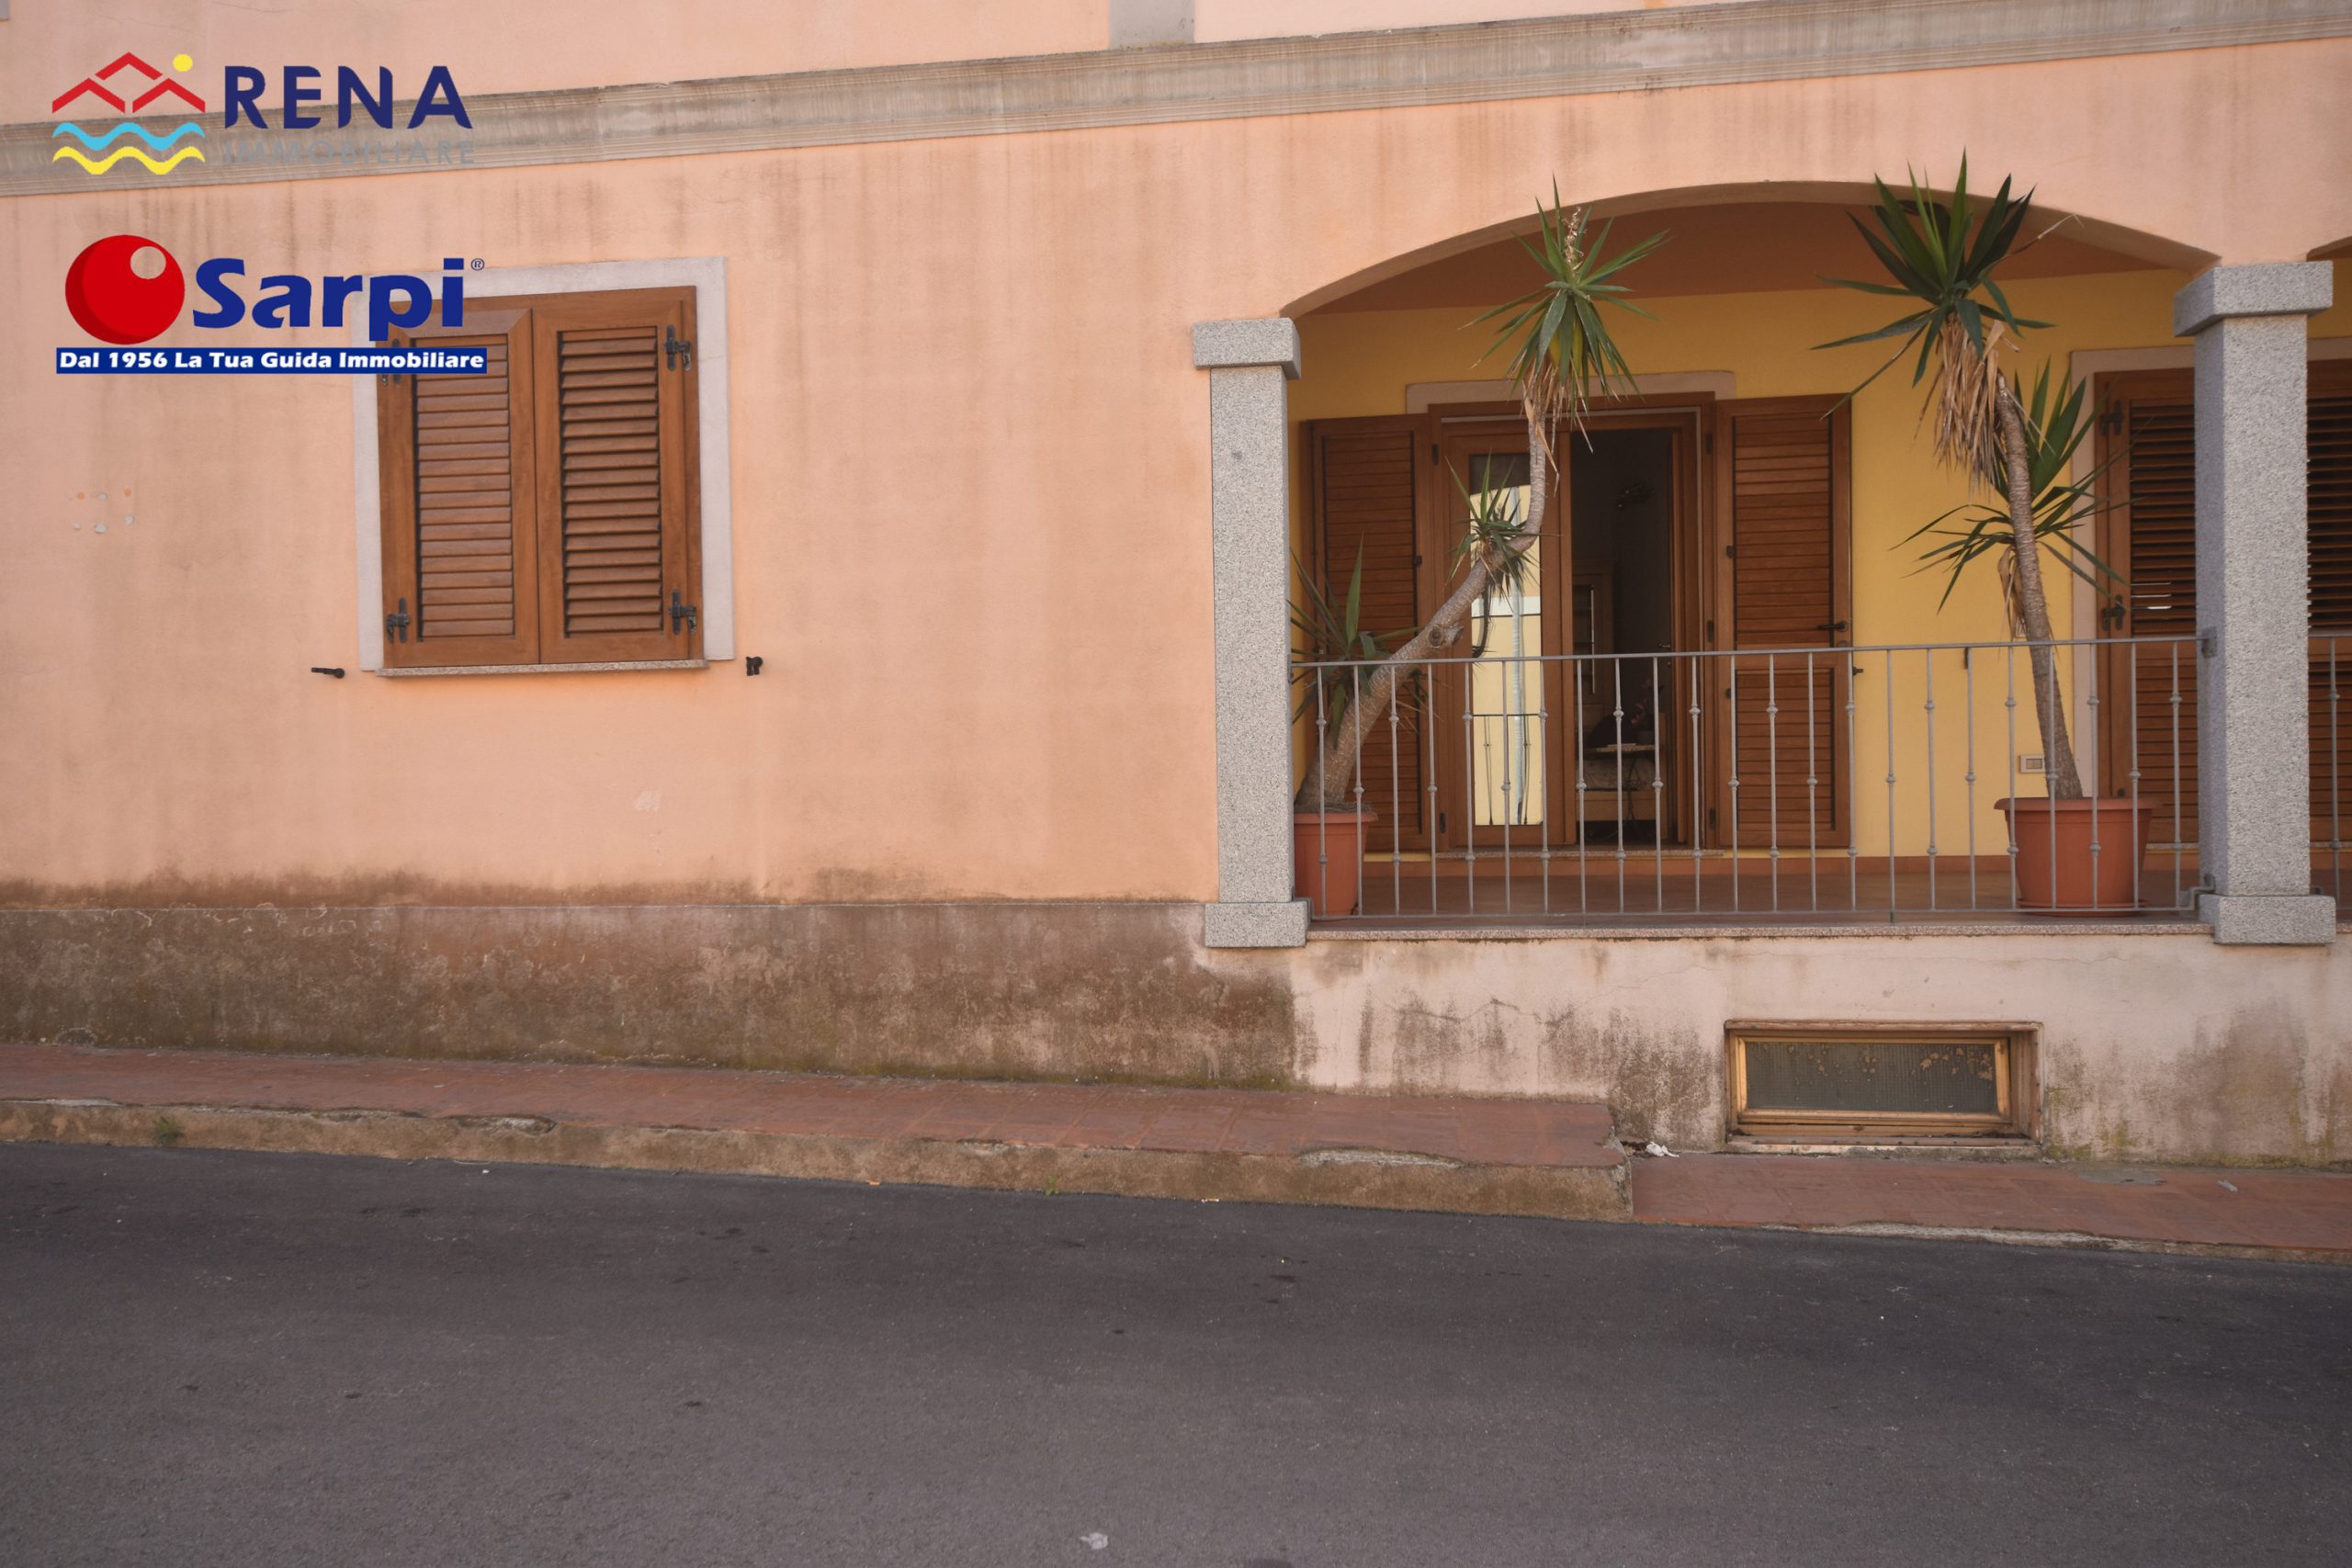 Interessante monolocale in zona centrale – Santa Teresa Gallura